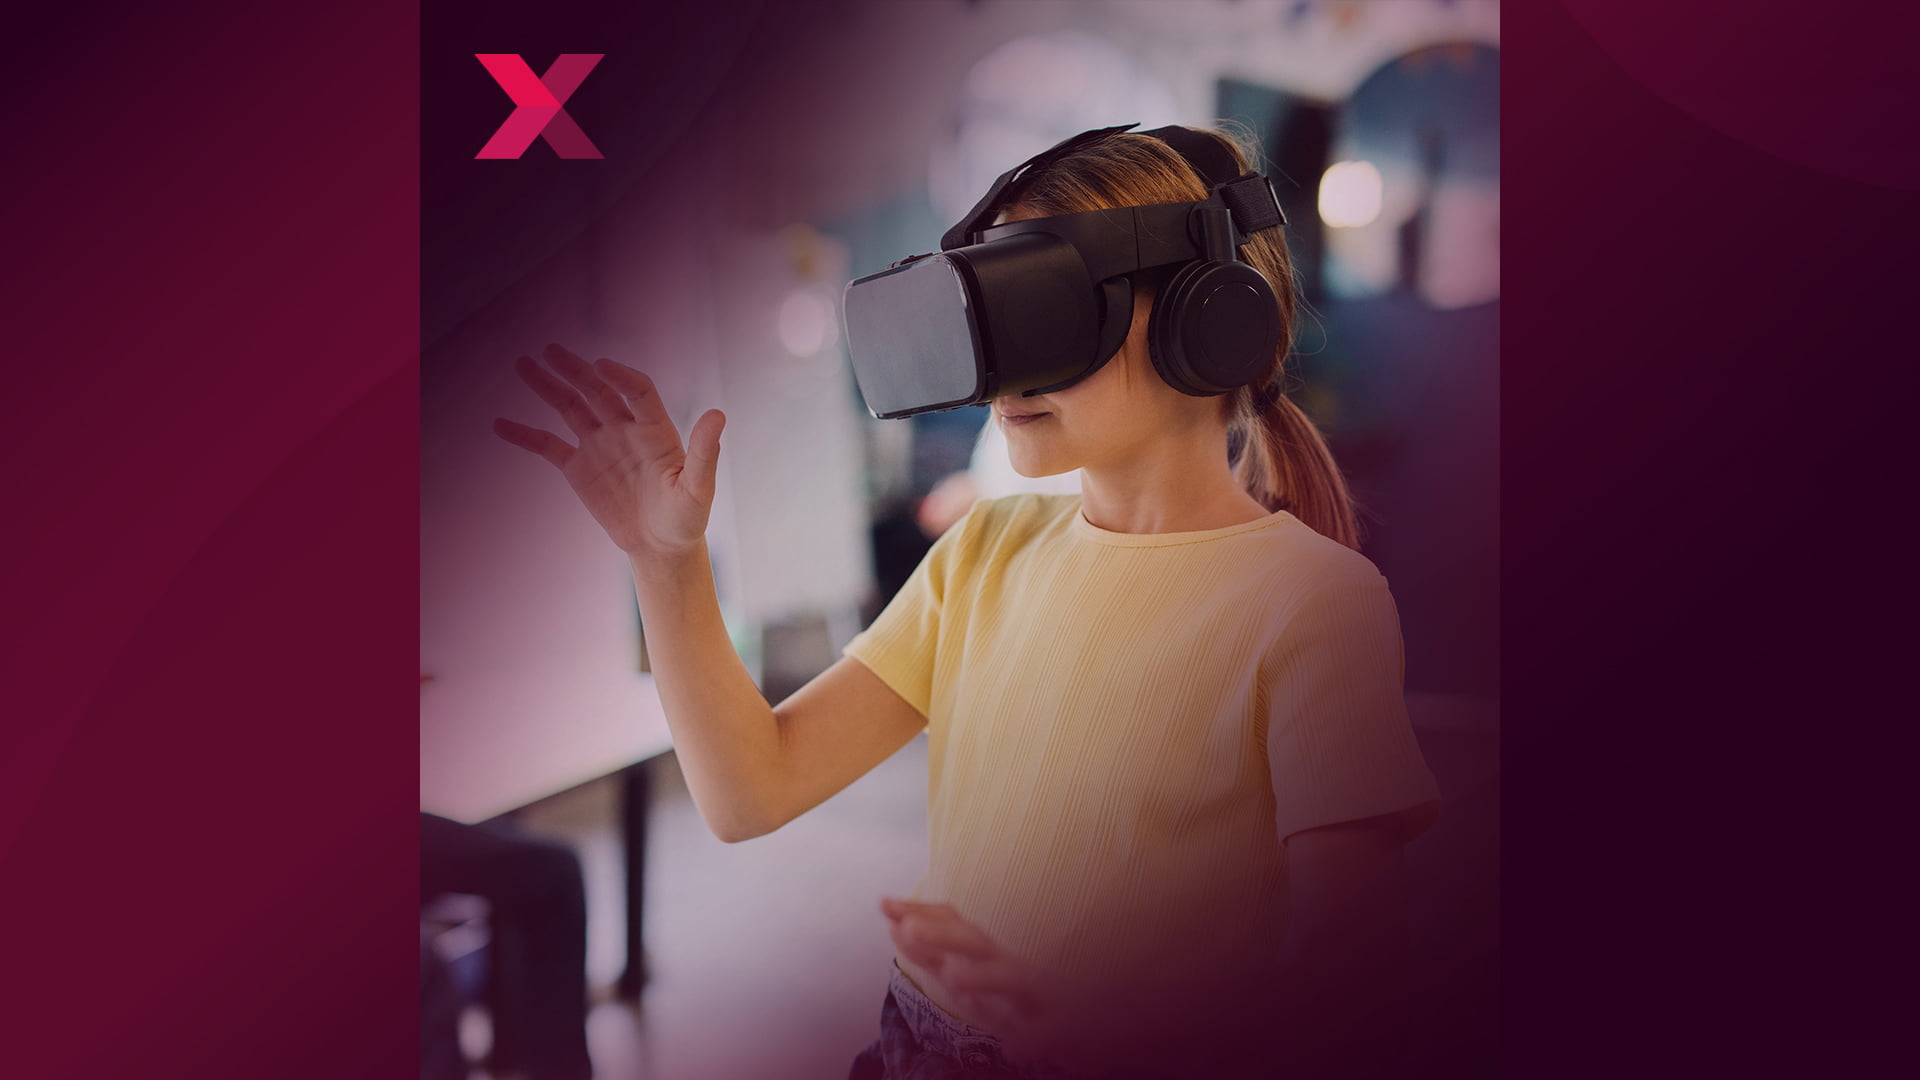 MIXEDCAST #284: Kinder und Virtual Reality - Chancen und Risiken